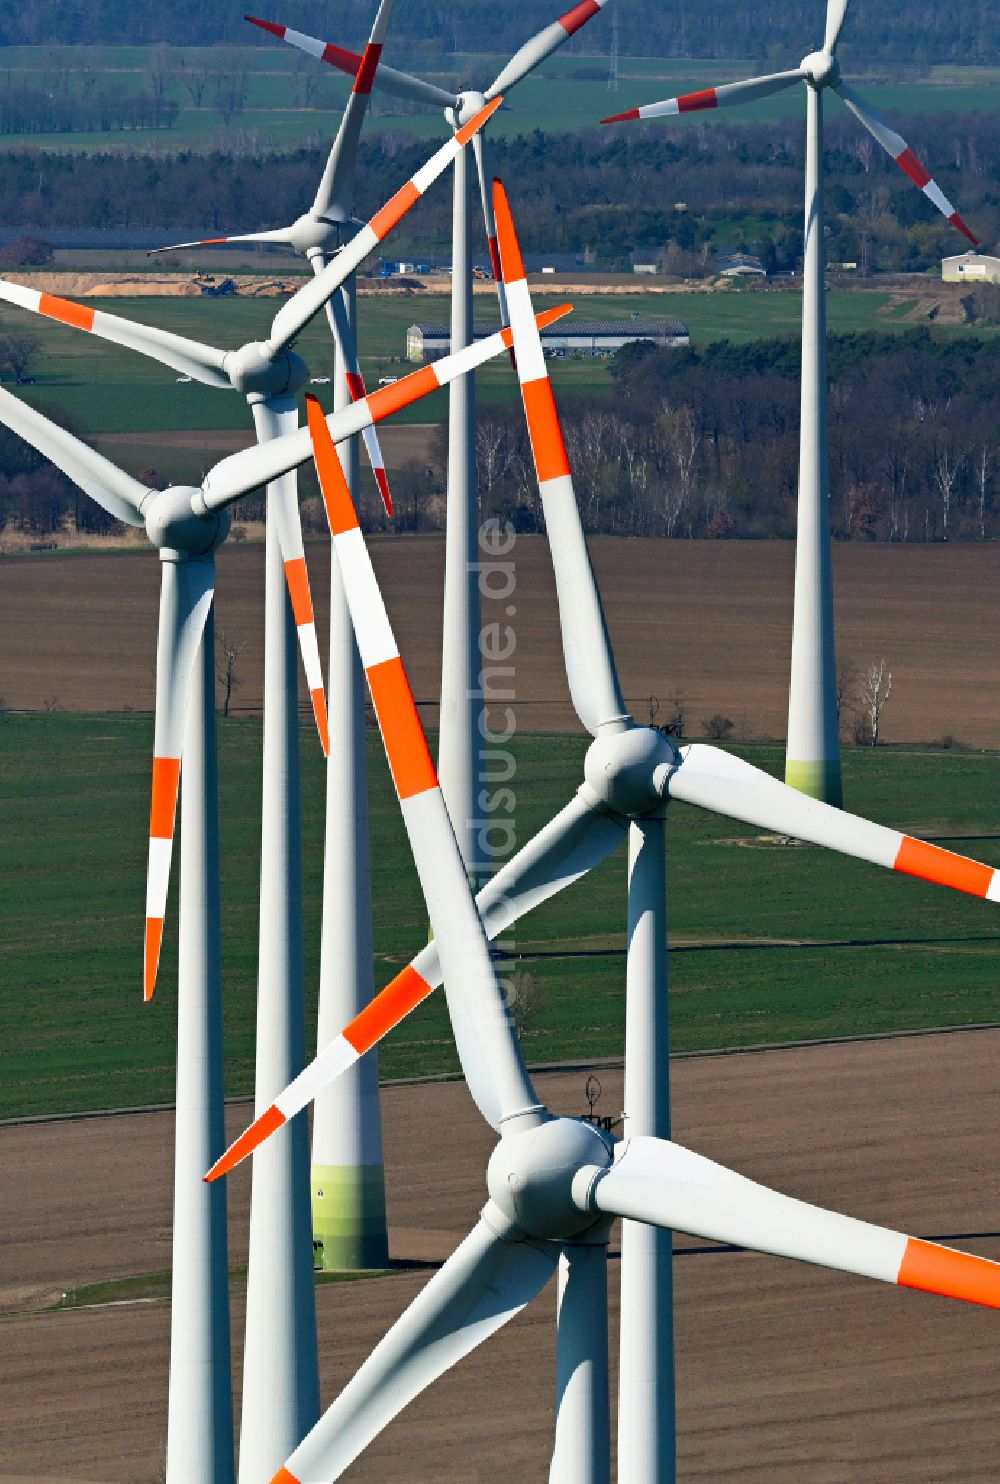 Quellendorf von oben - Windenergieanlagen (WEA) auf einem Feld in Quellendorf im Bundesland Sachsen-Anhalt, Deutschland